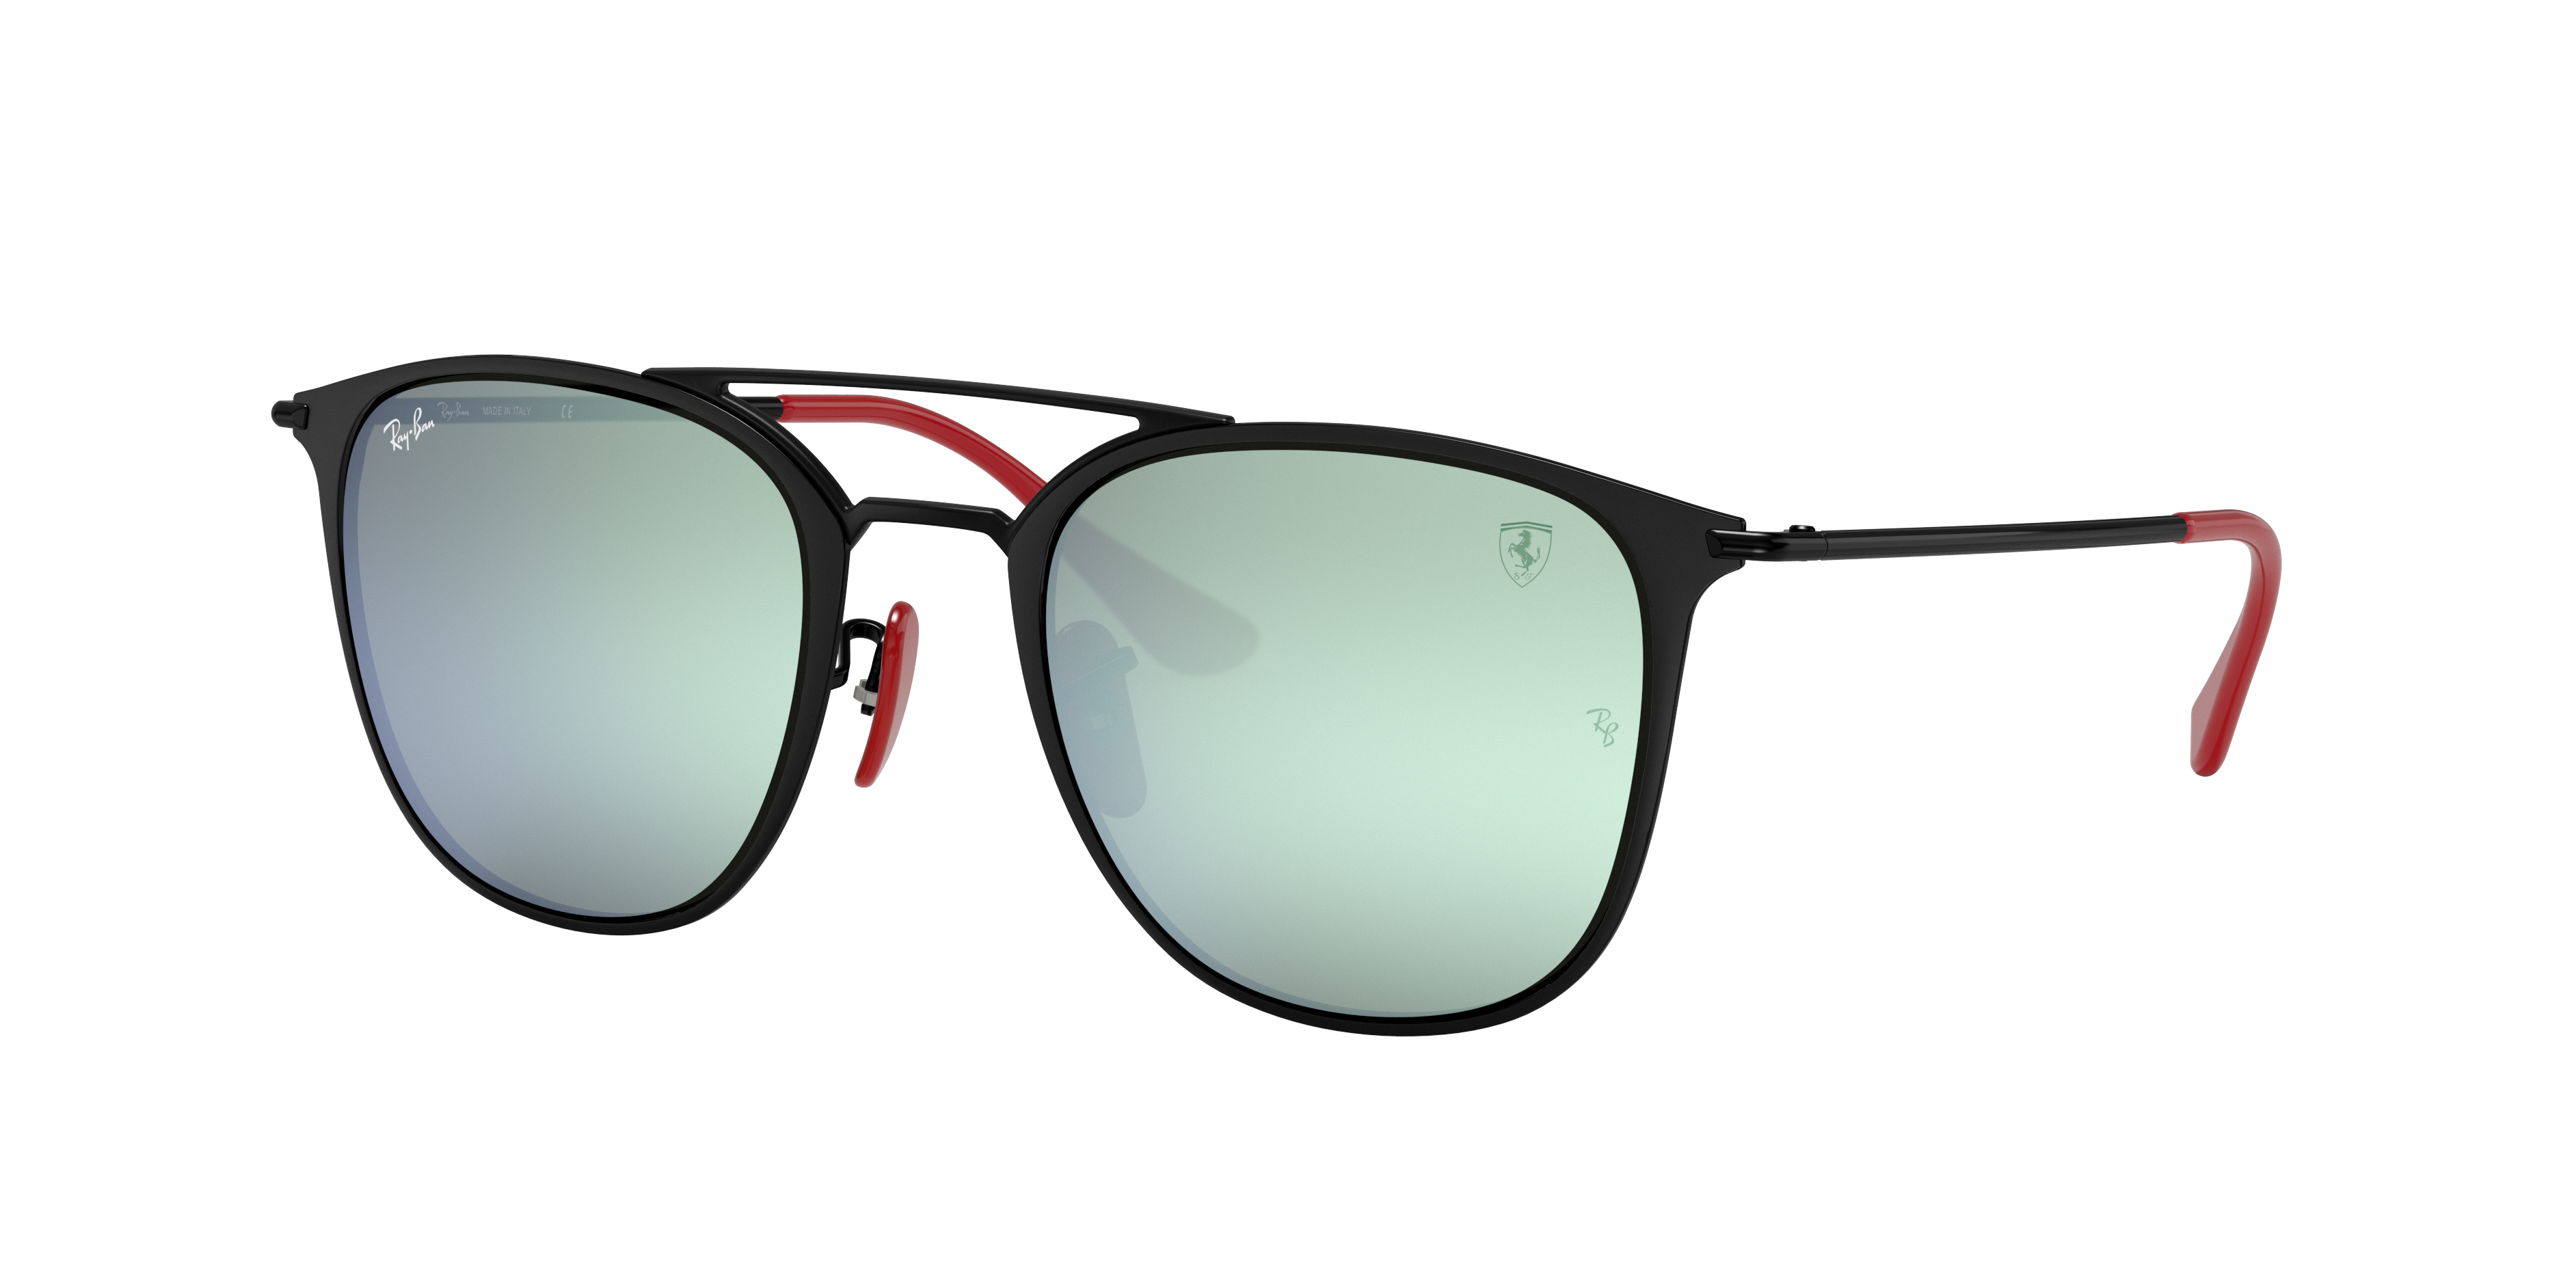 Scuderia Ferrari Collection Rb3601m Sunglasses in Black and Silver | Ray-Ban ®